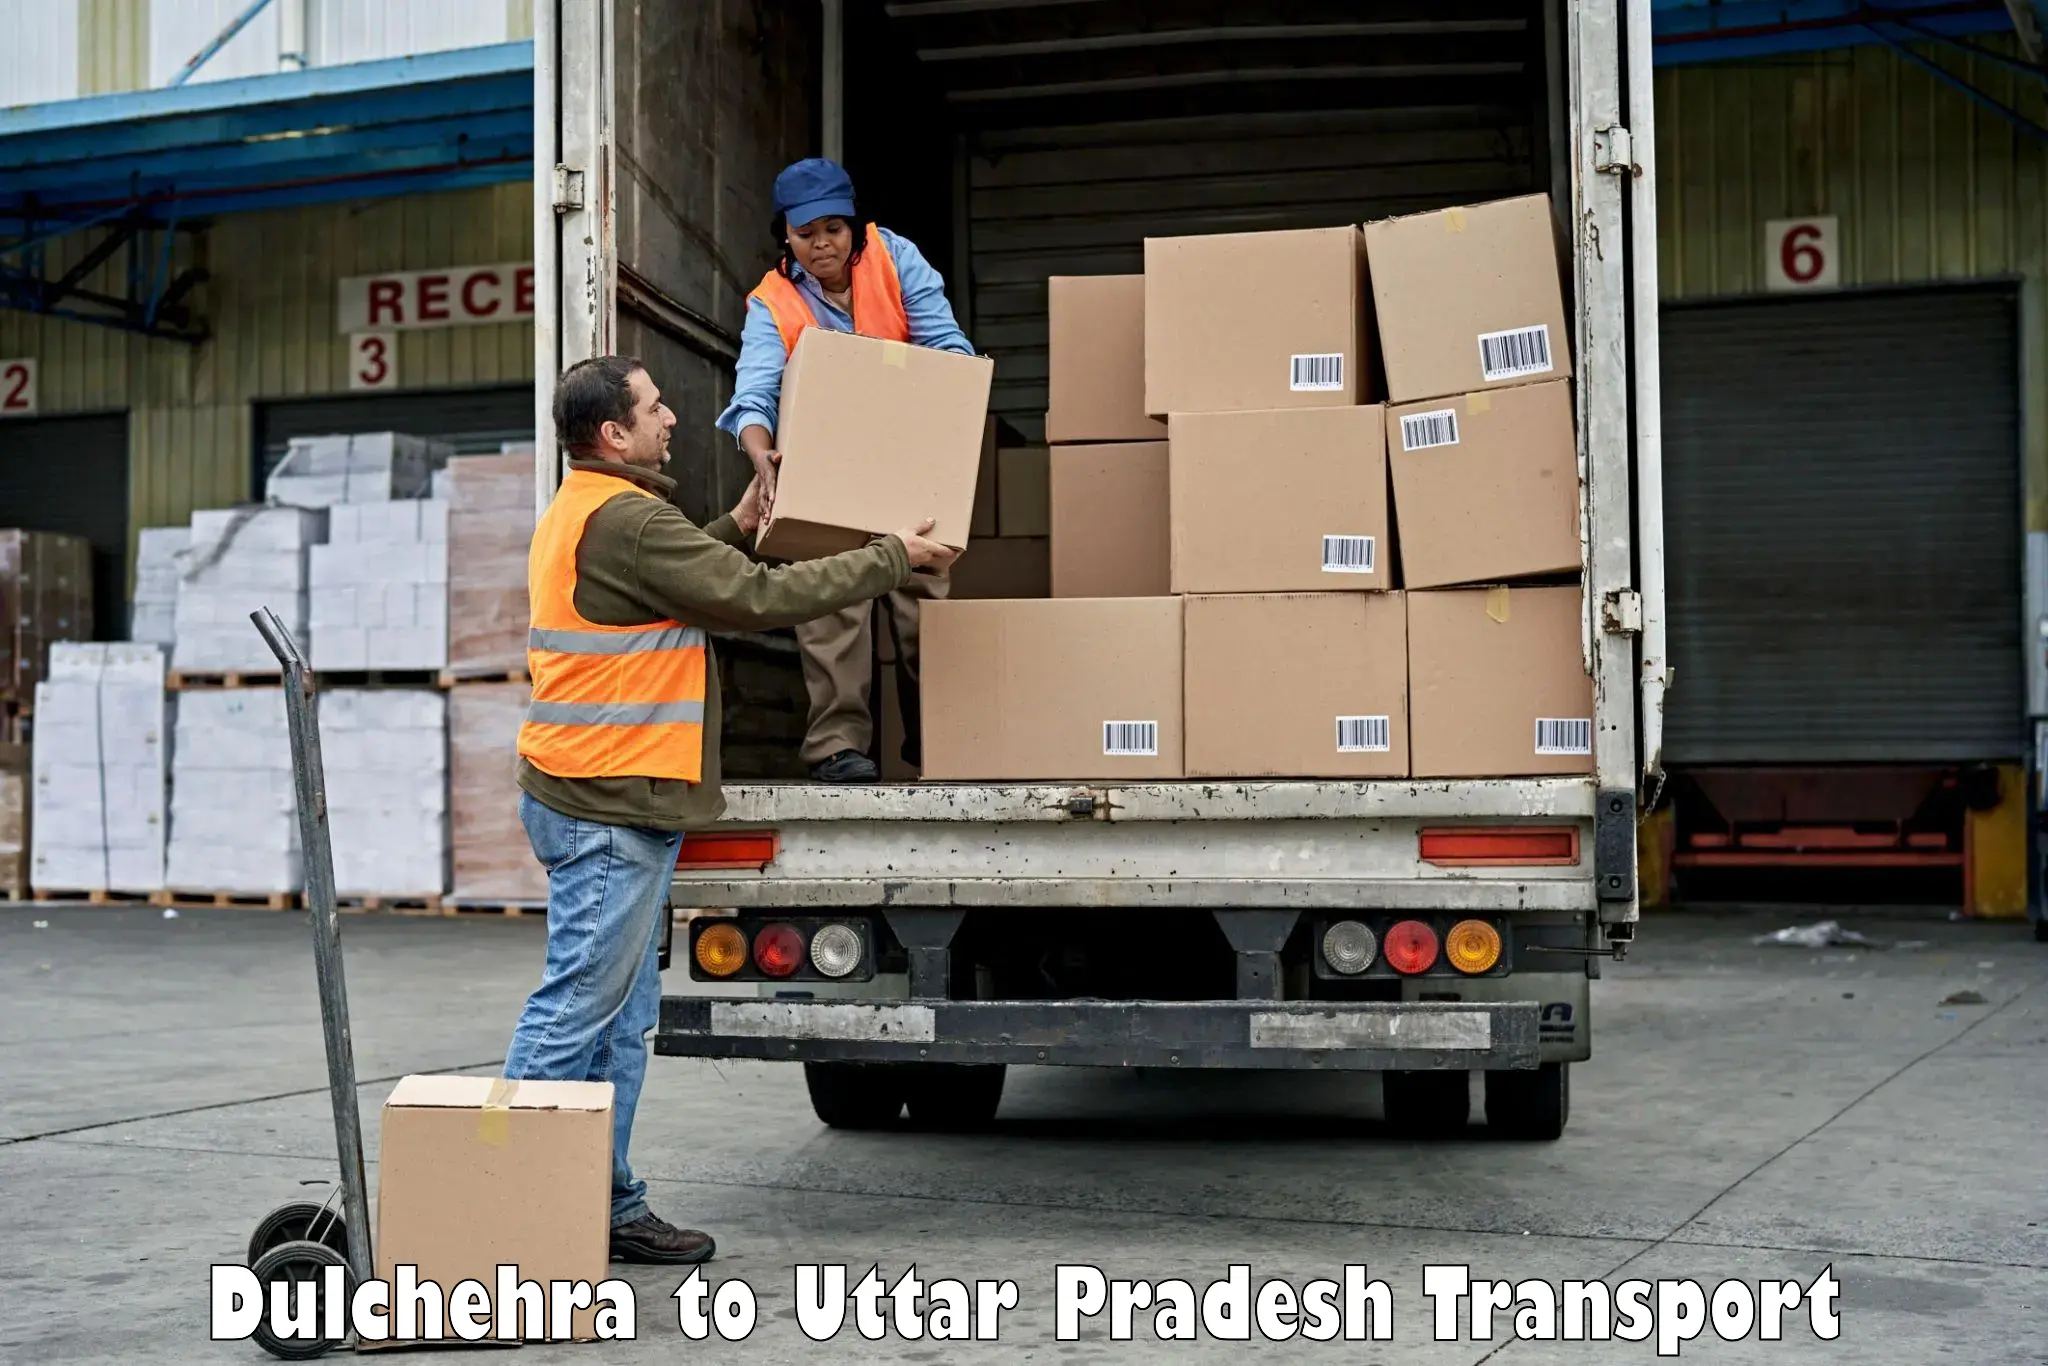 Daily parcel service transport Dulchehra to Shankargarh